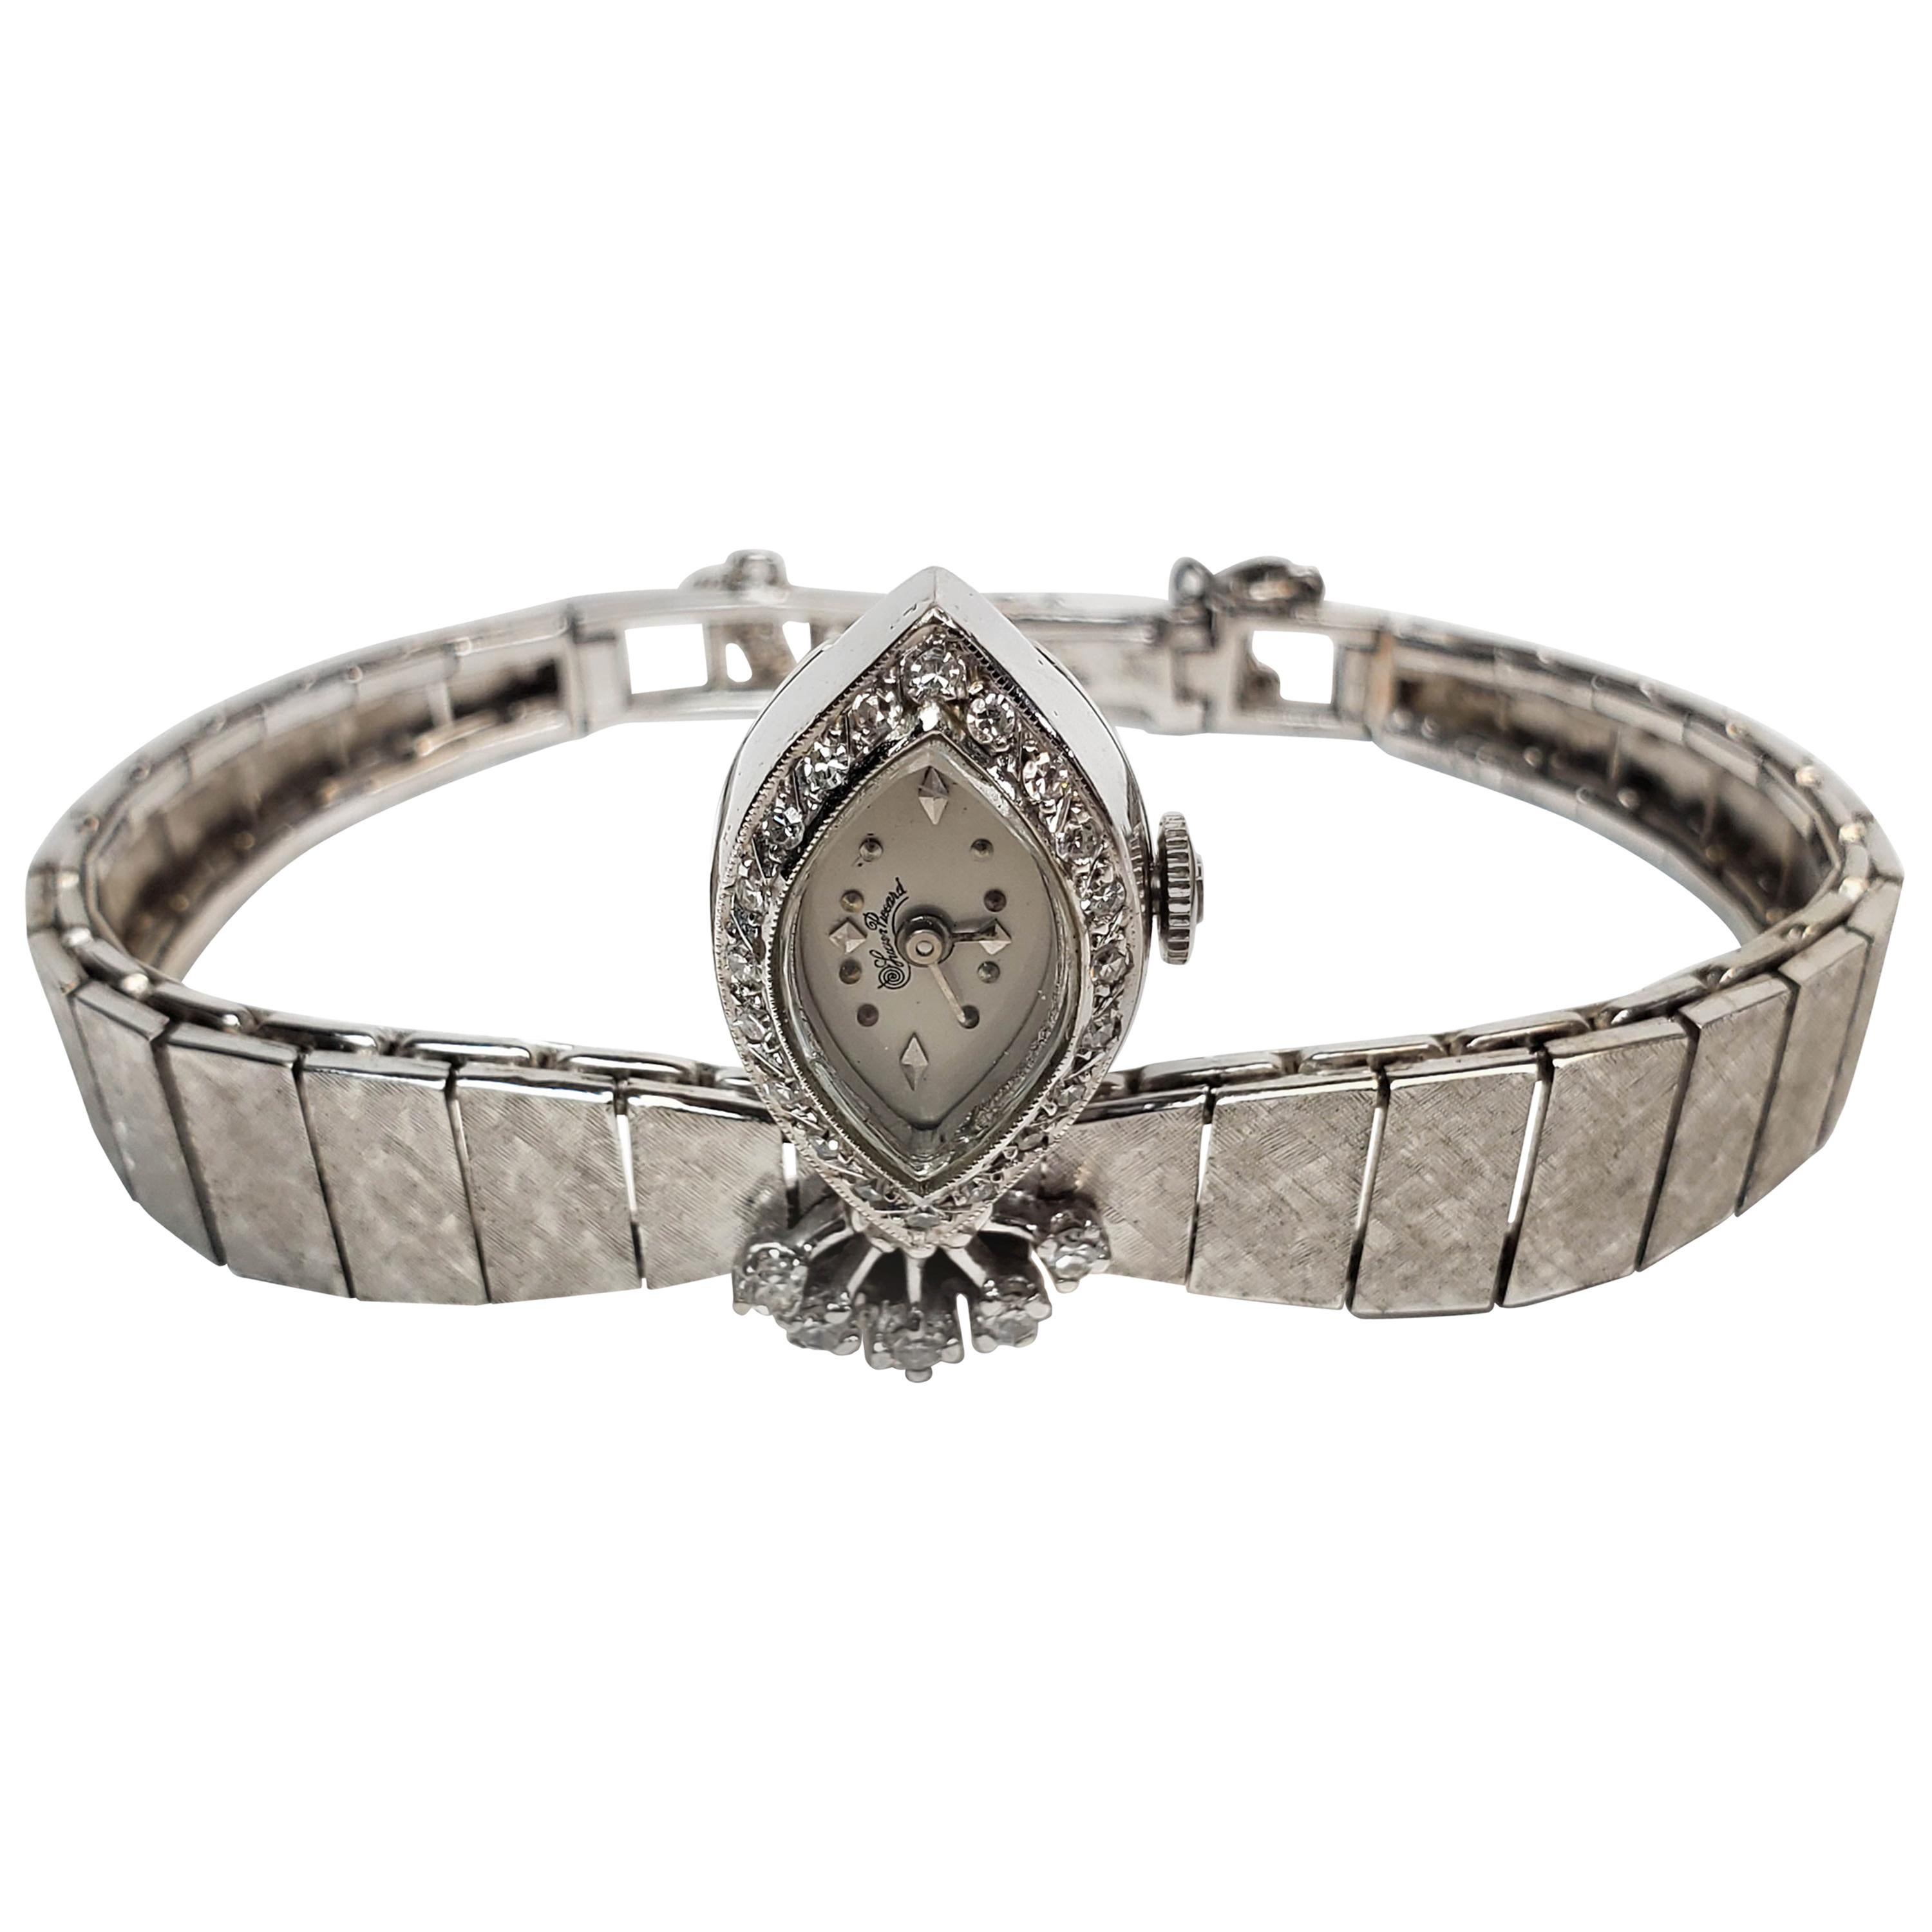 Lucien Picard Diamond Ladies Wristwatch in 14 Karat White Gold